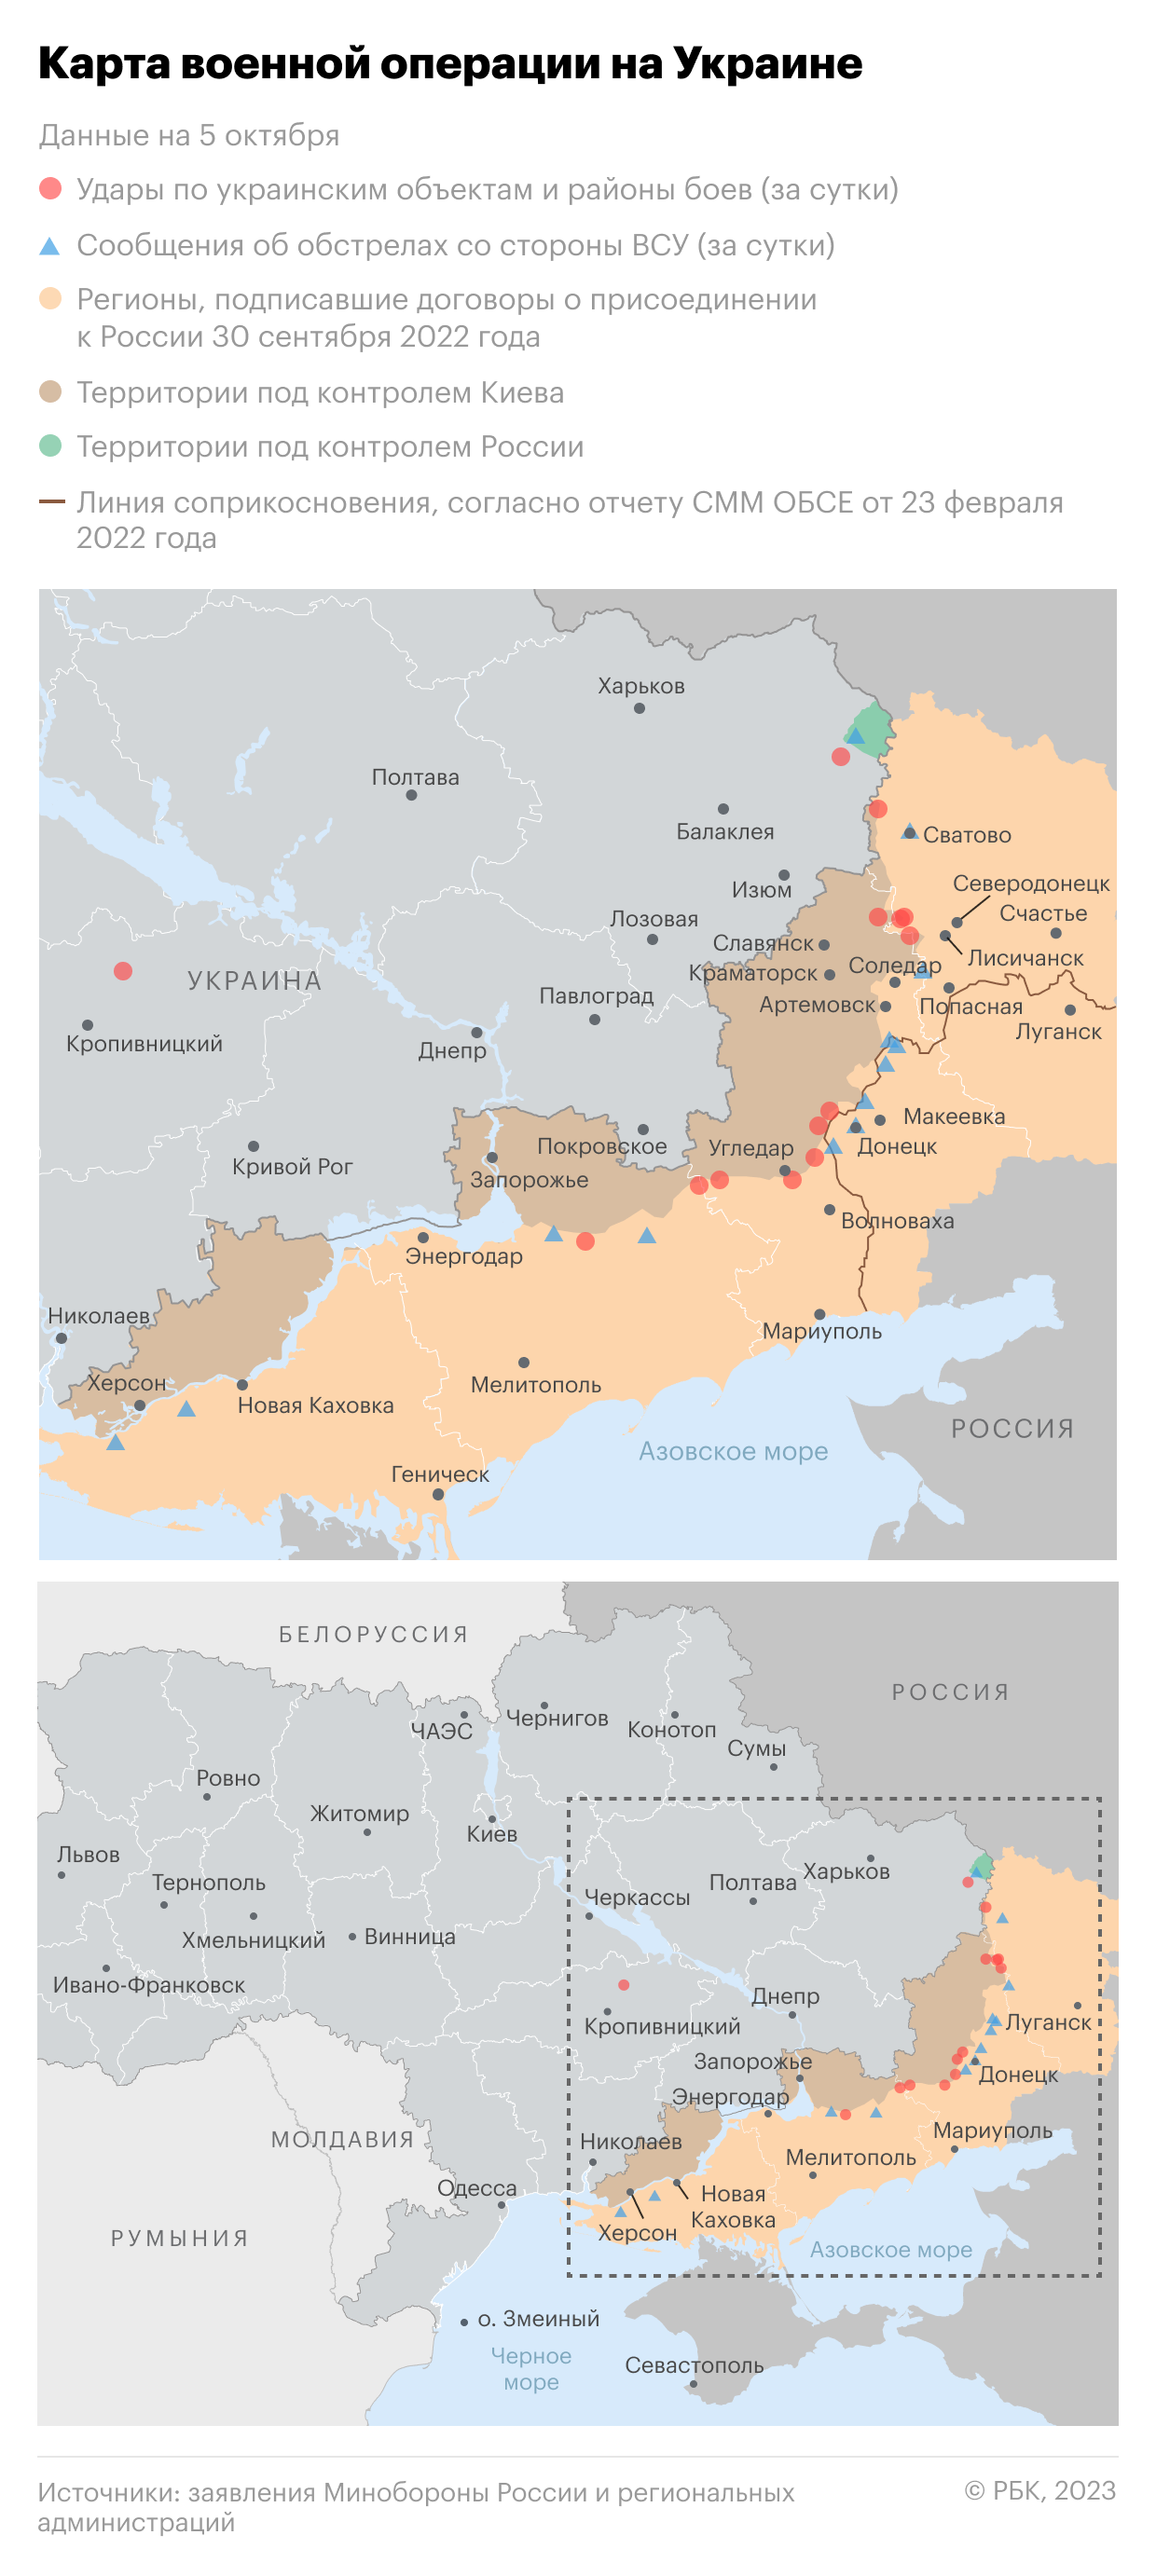 Военная операция на Украине. Карта на 5 октября